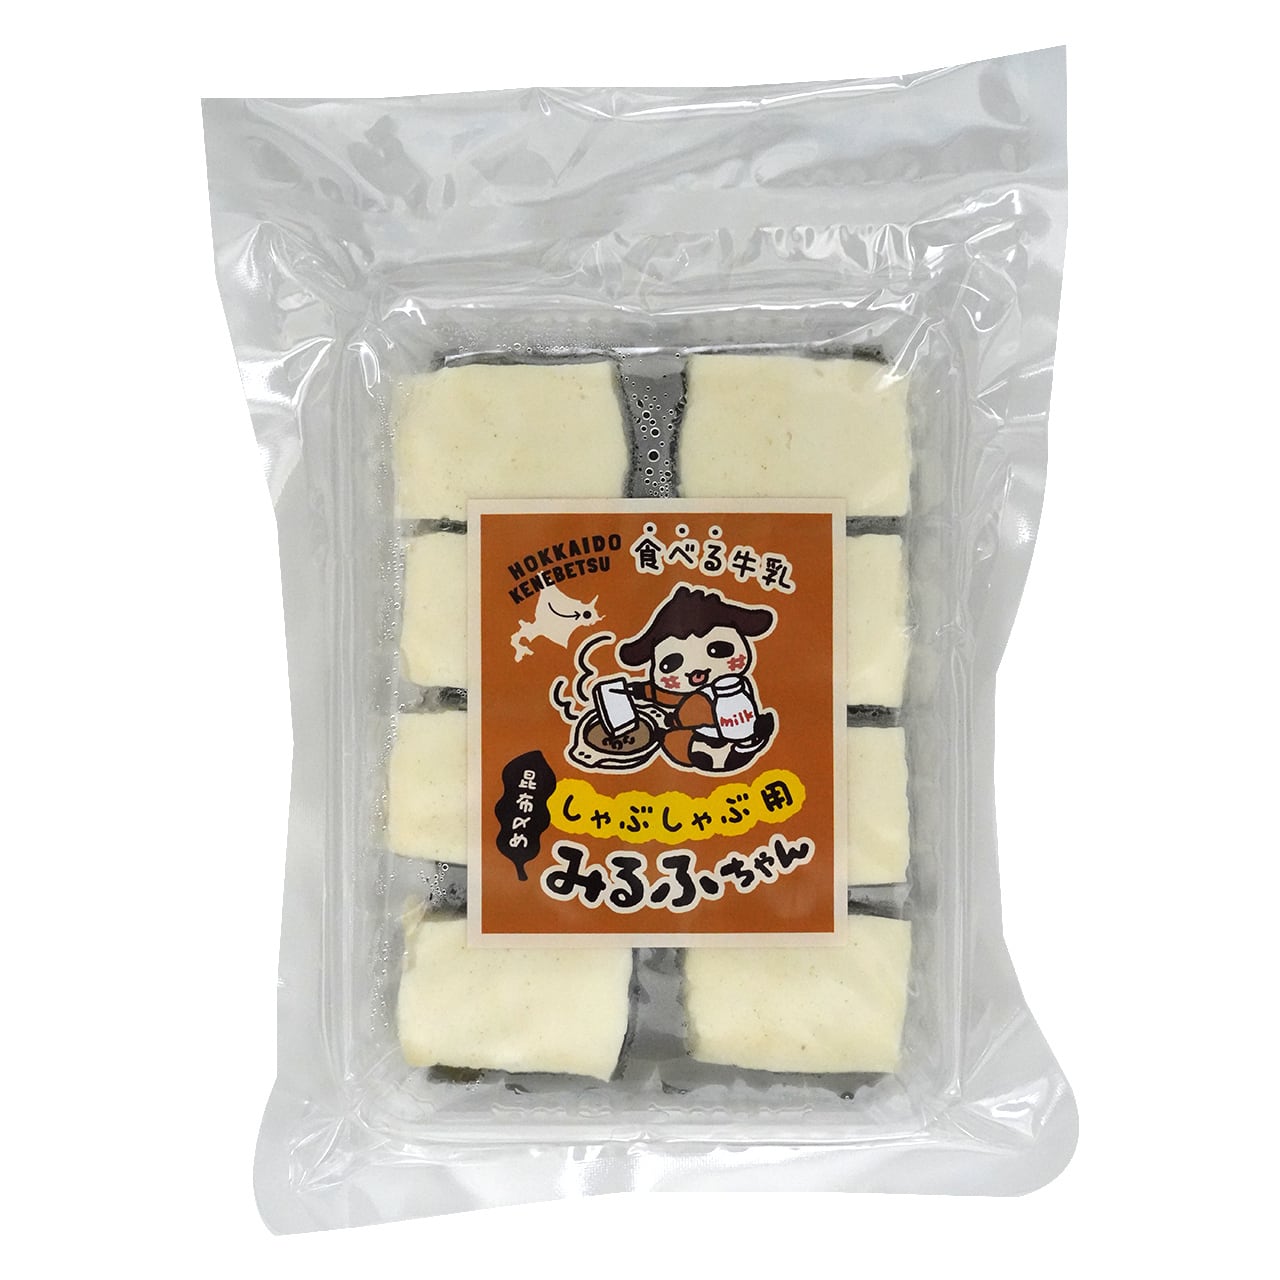 【しゃぶしゃぶ用】みるふちゃん【牛乳豆腐】北海道の酪農家が作った食べる牛乳